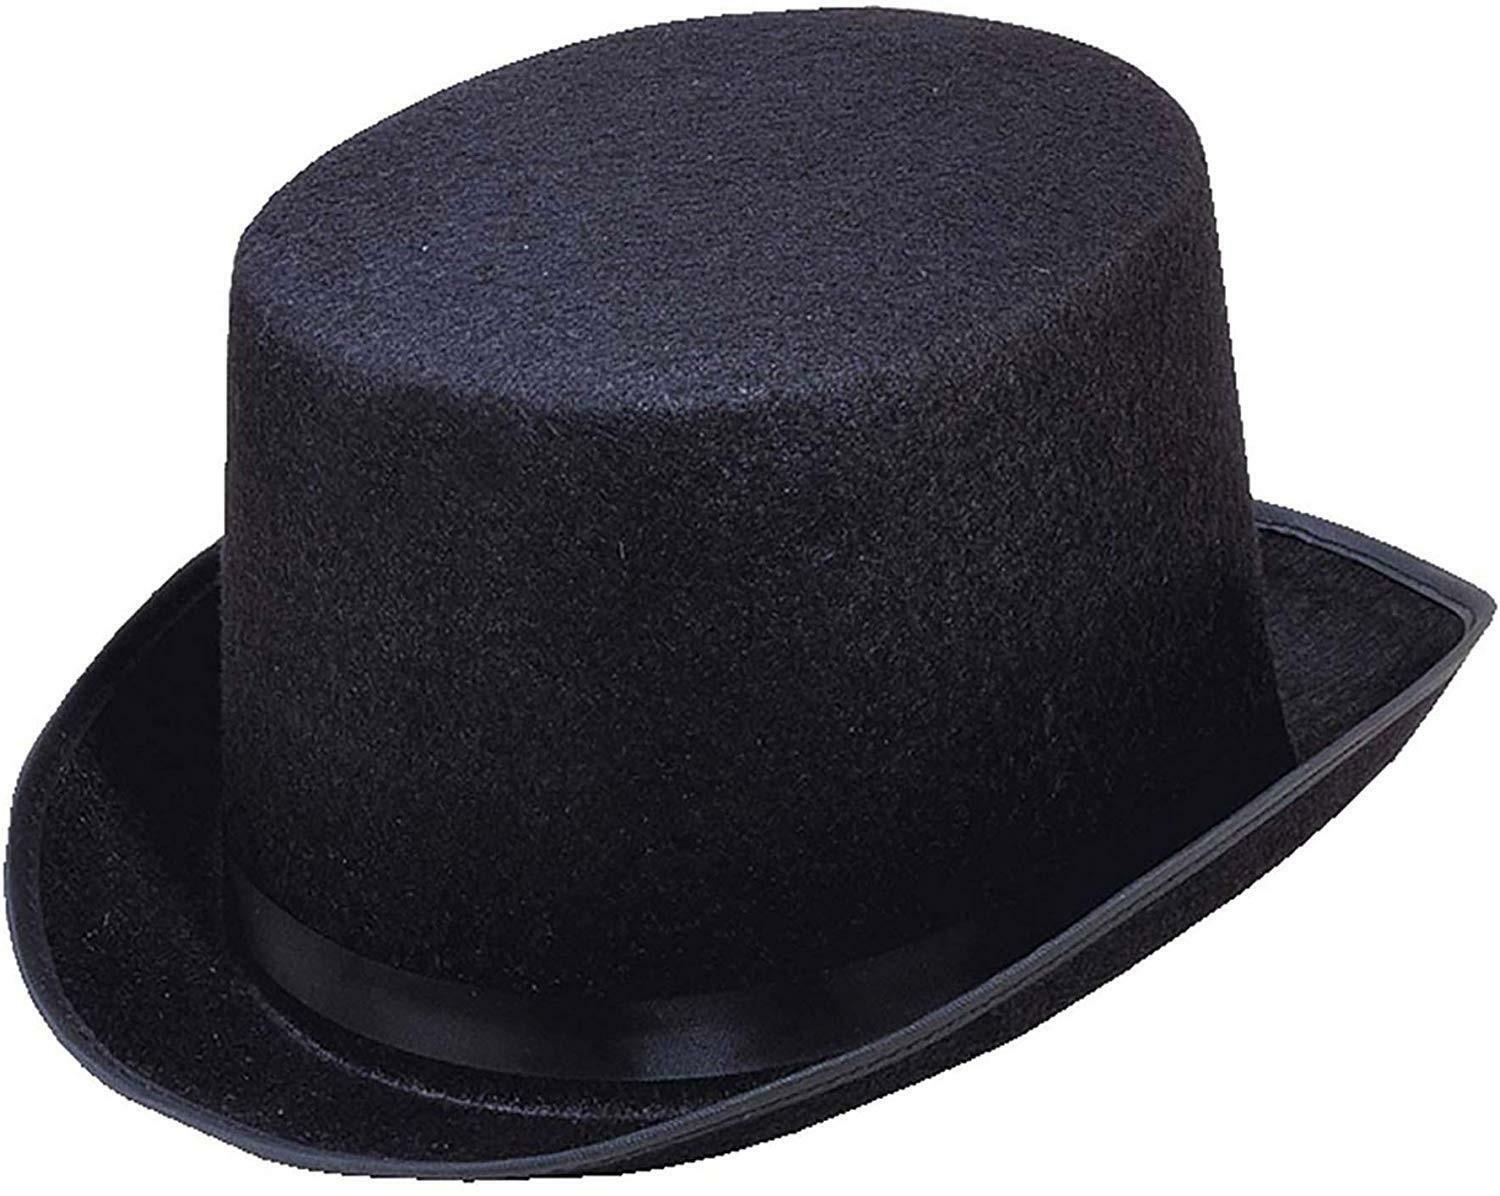 widmann cappello a cilindro nero